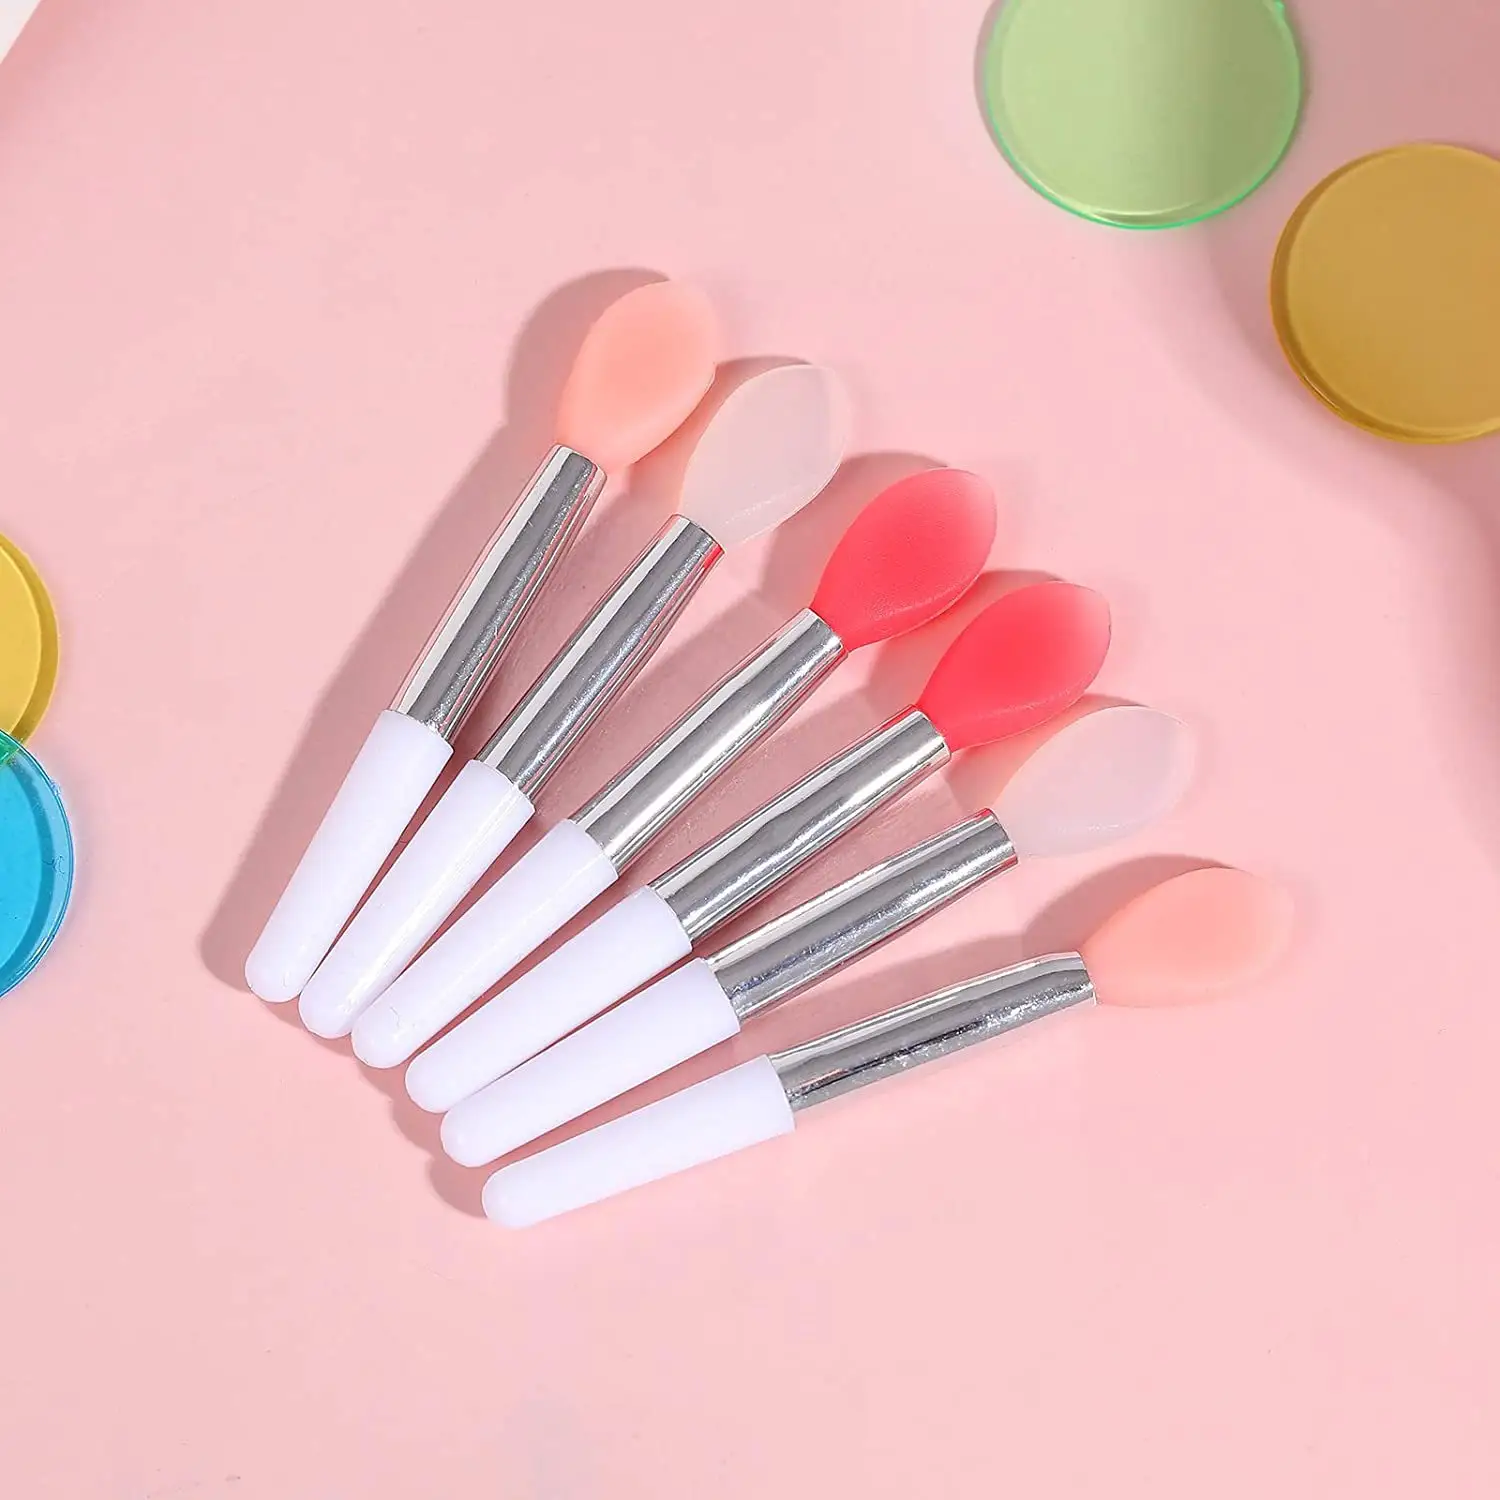 Kuas Lip Gloss Silikon Mini Aplikator Kuas Lipstik Portabel untuk Produk Makeup